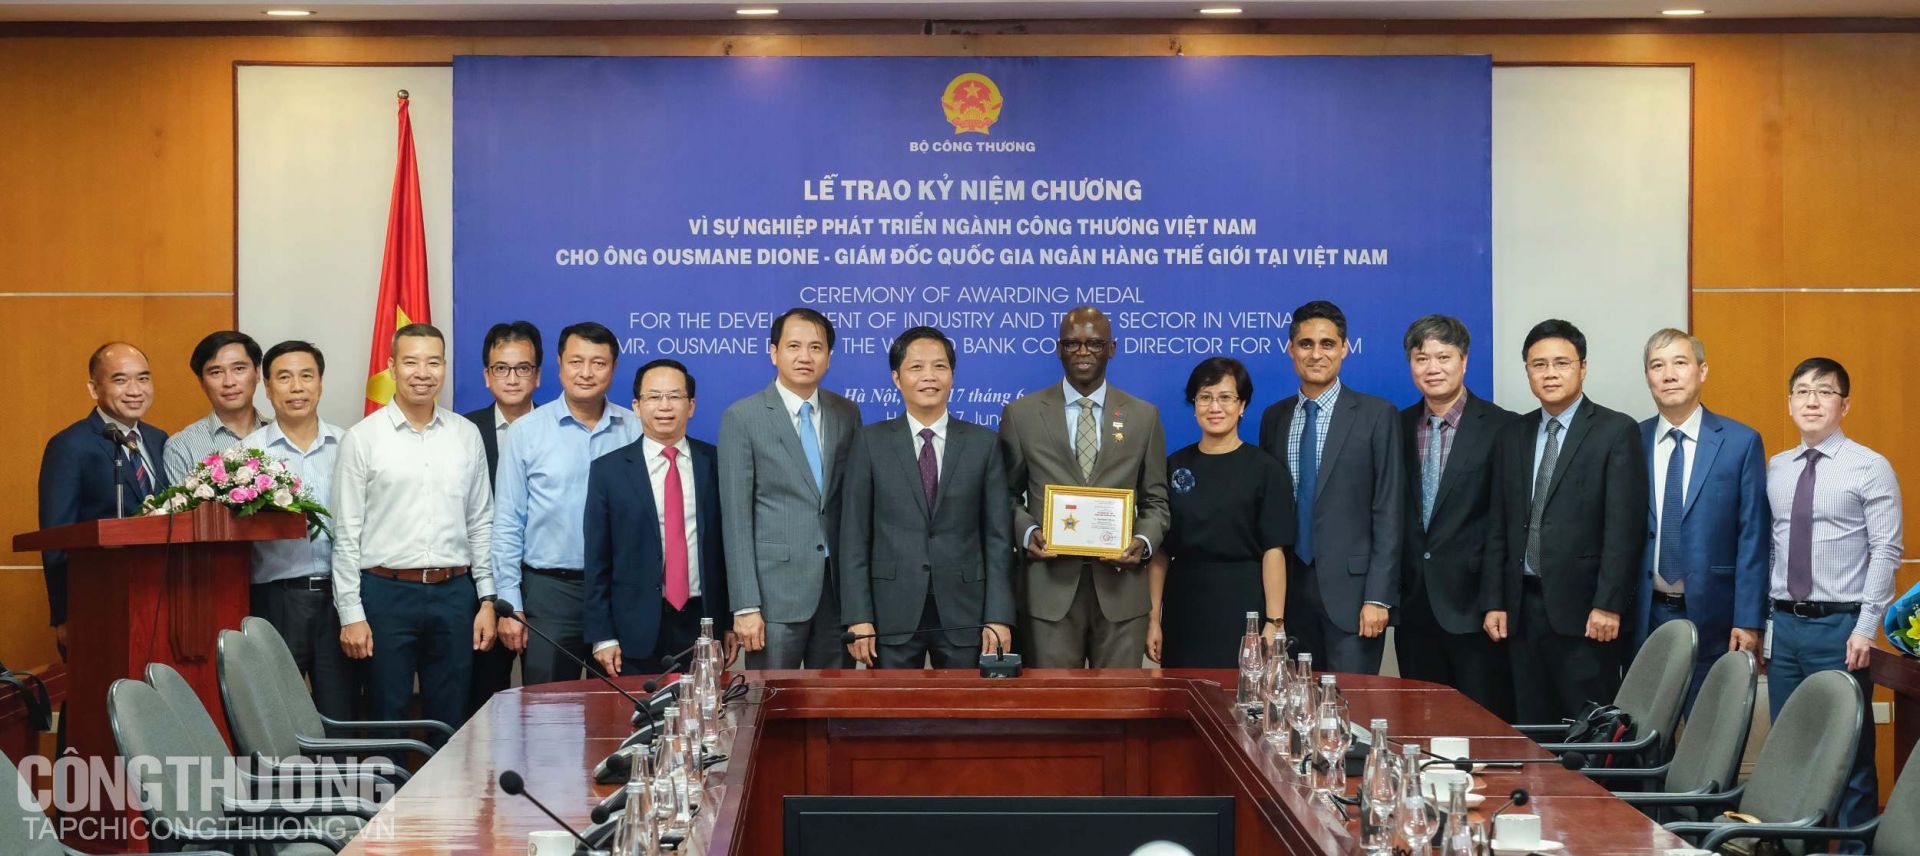 Đại diện Bộ Công Thương và Ngân hàng Thế giới tại Việt Nam